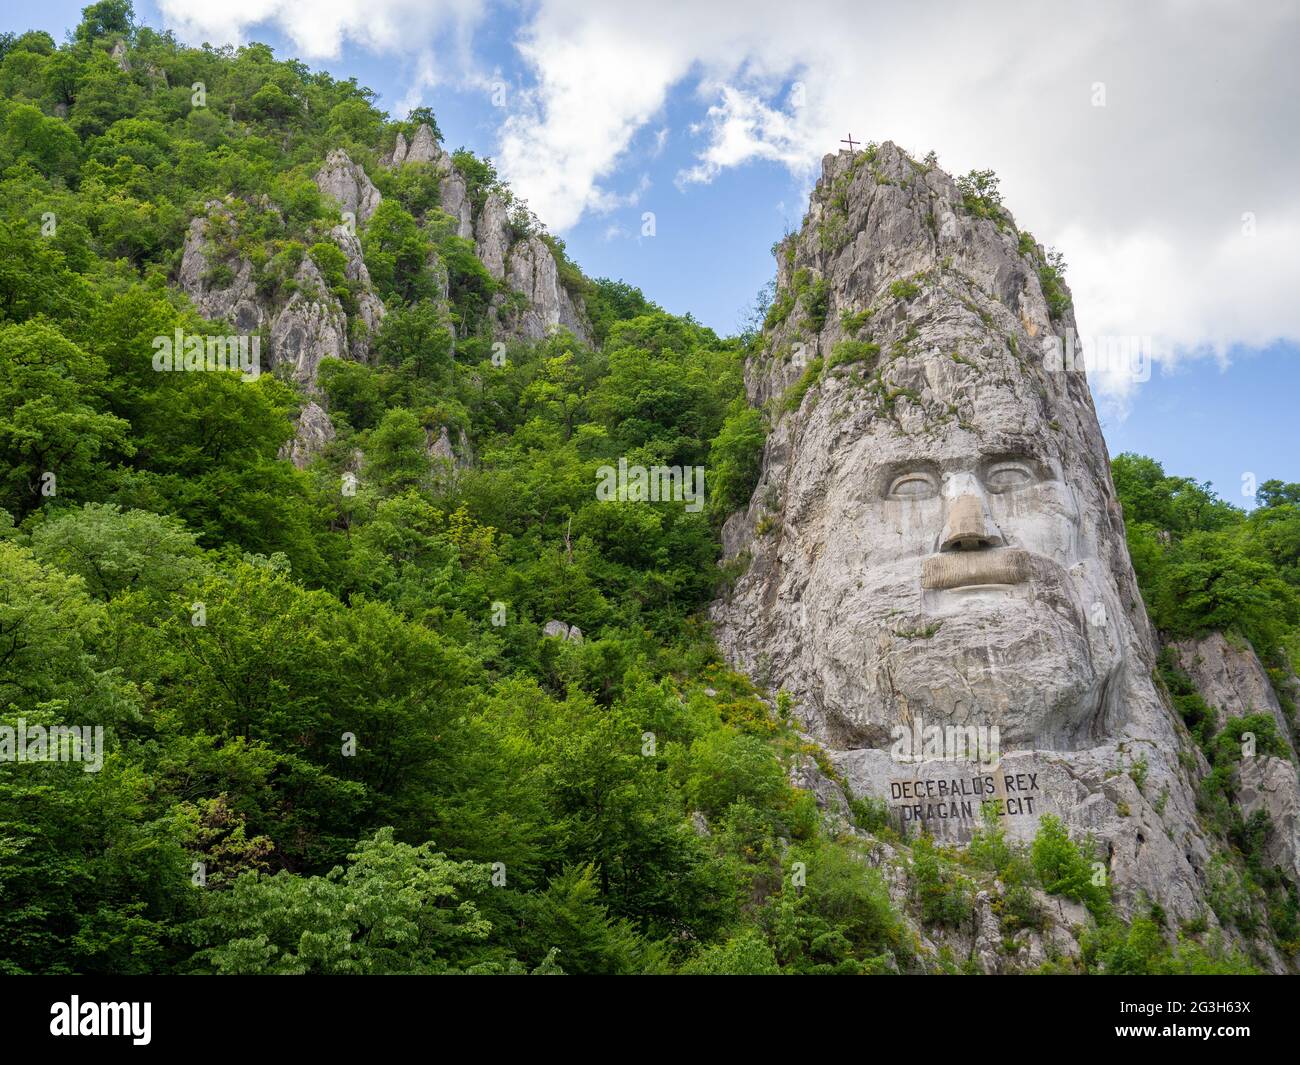 roc sculpture de decebal dacian roi près d'orsova, roumanie Banque D'Images